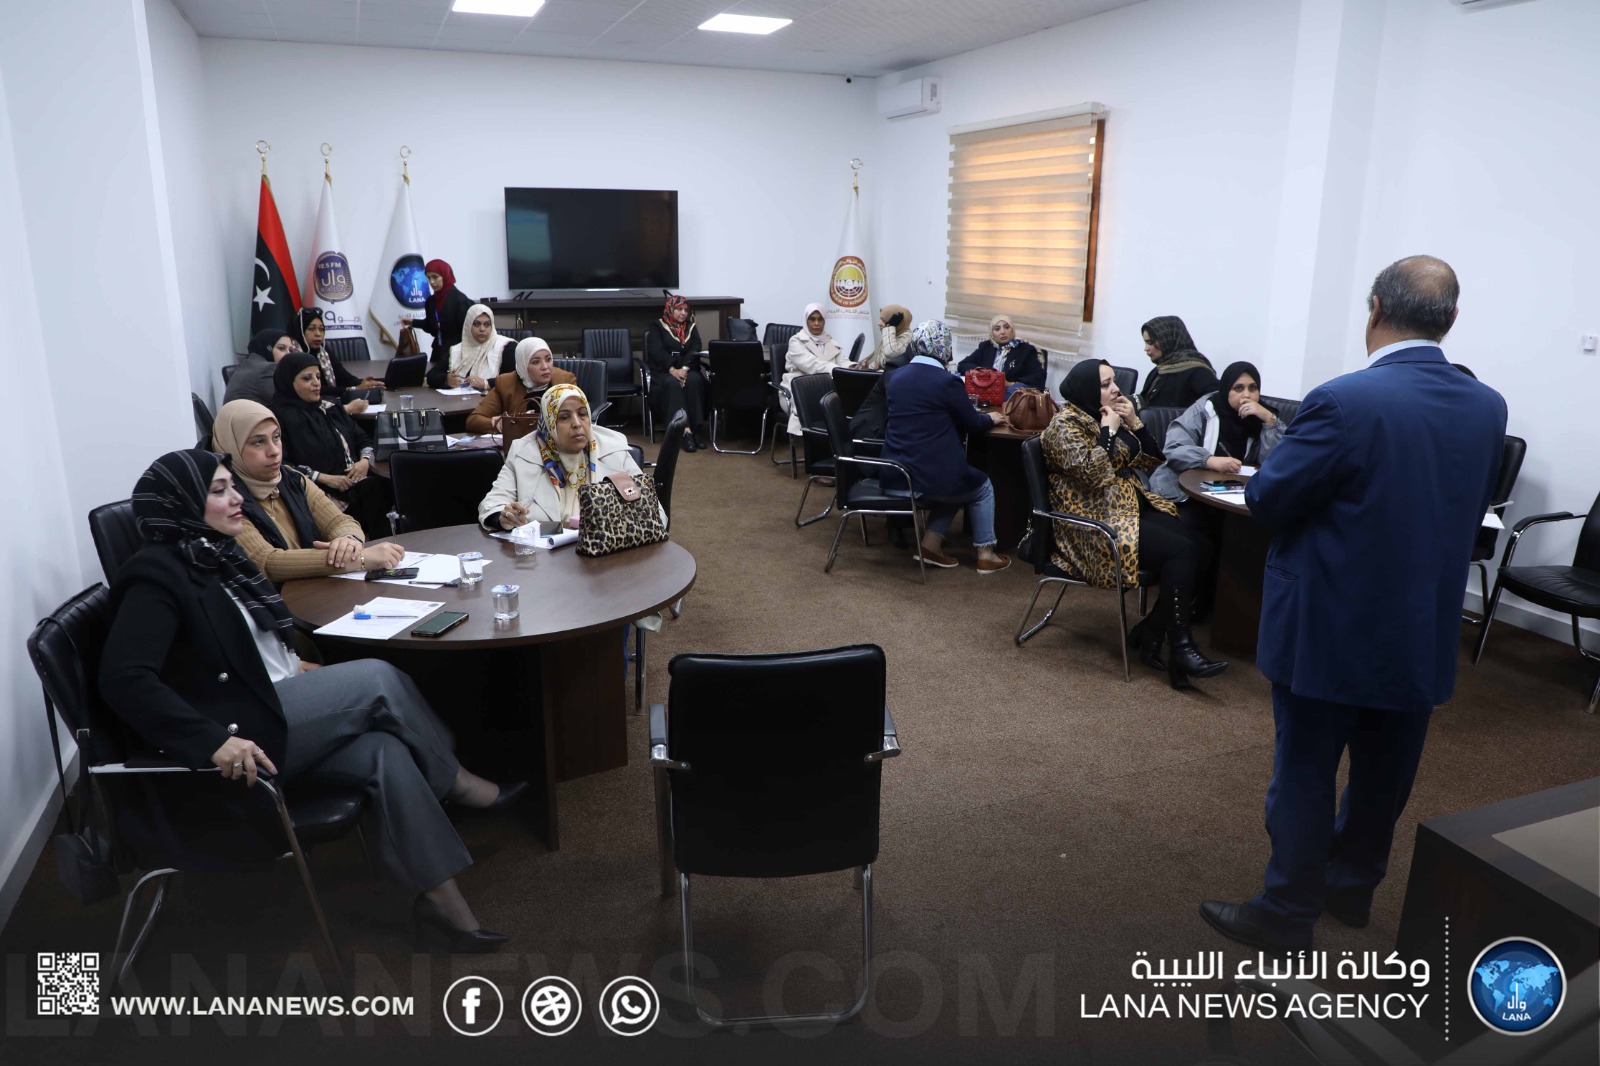 إقامة ورشة تدريبية بالتعاون بين الشراكة المجتمعية و وزارة المرأة بمقر وكالة الأنباء الليبية